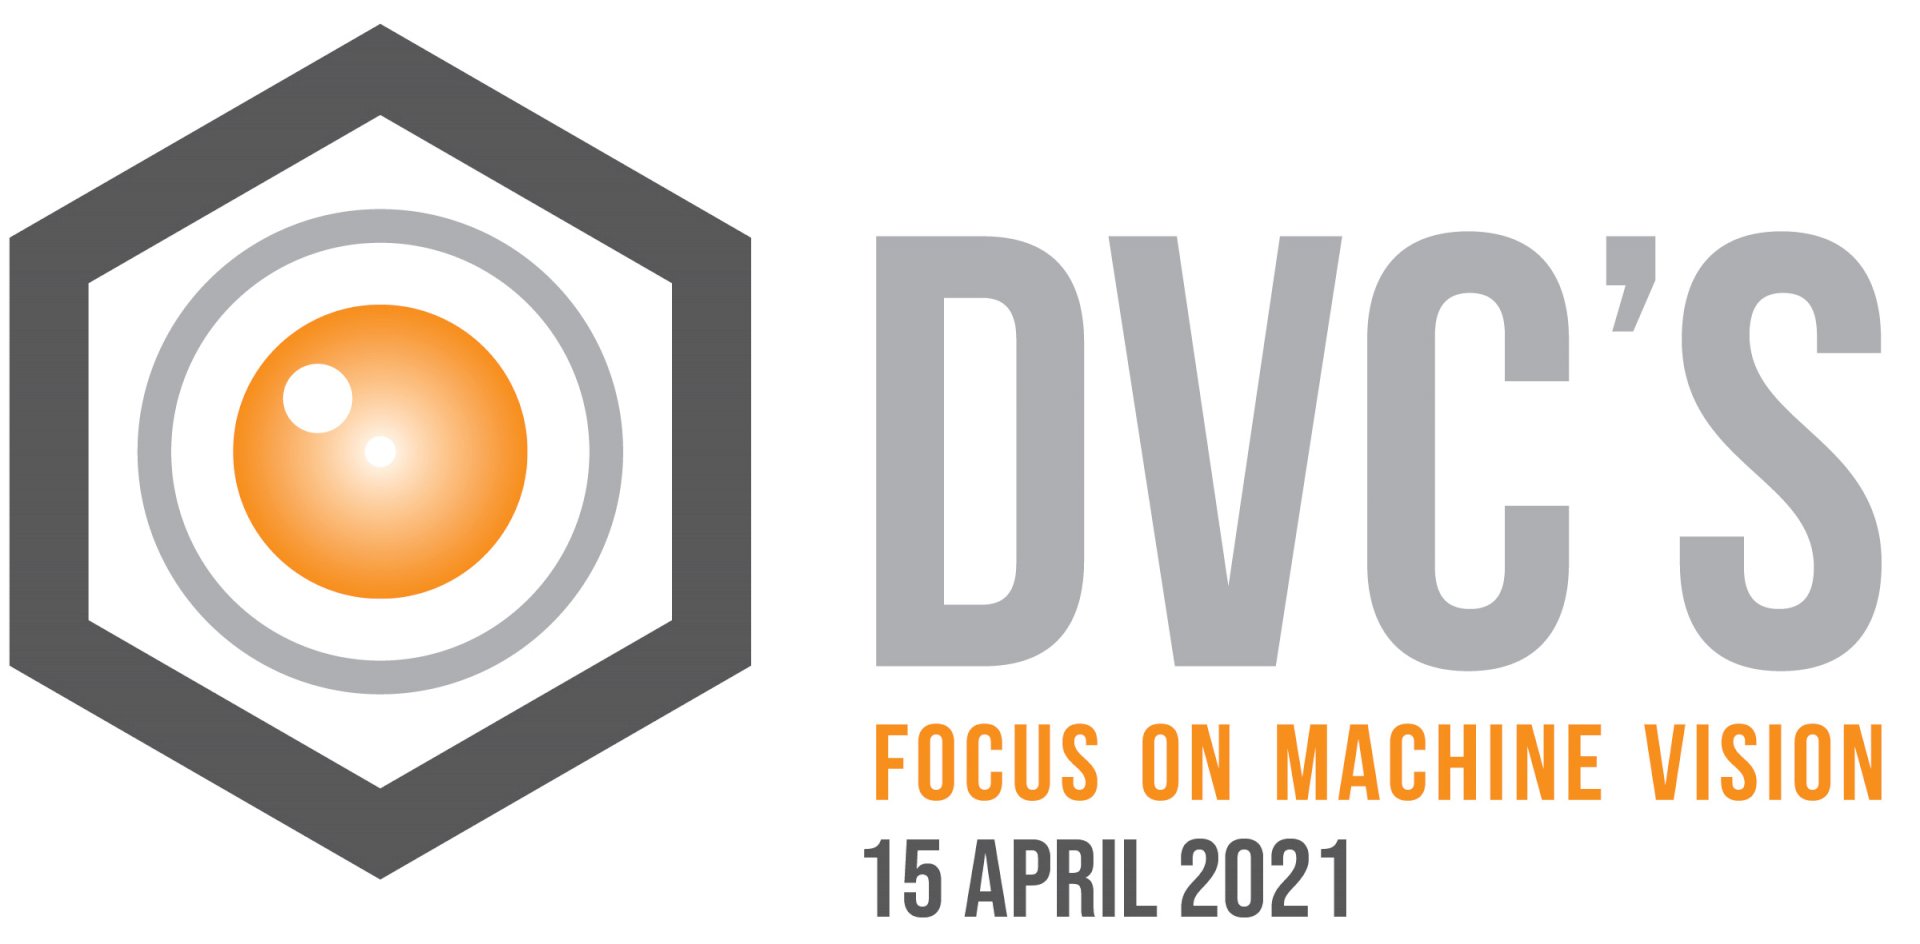 15 april 2021: Focus on Machine Vision